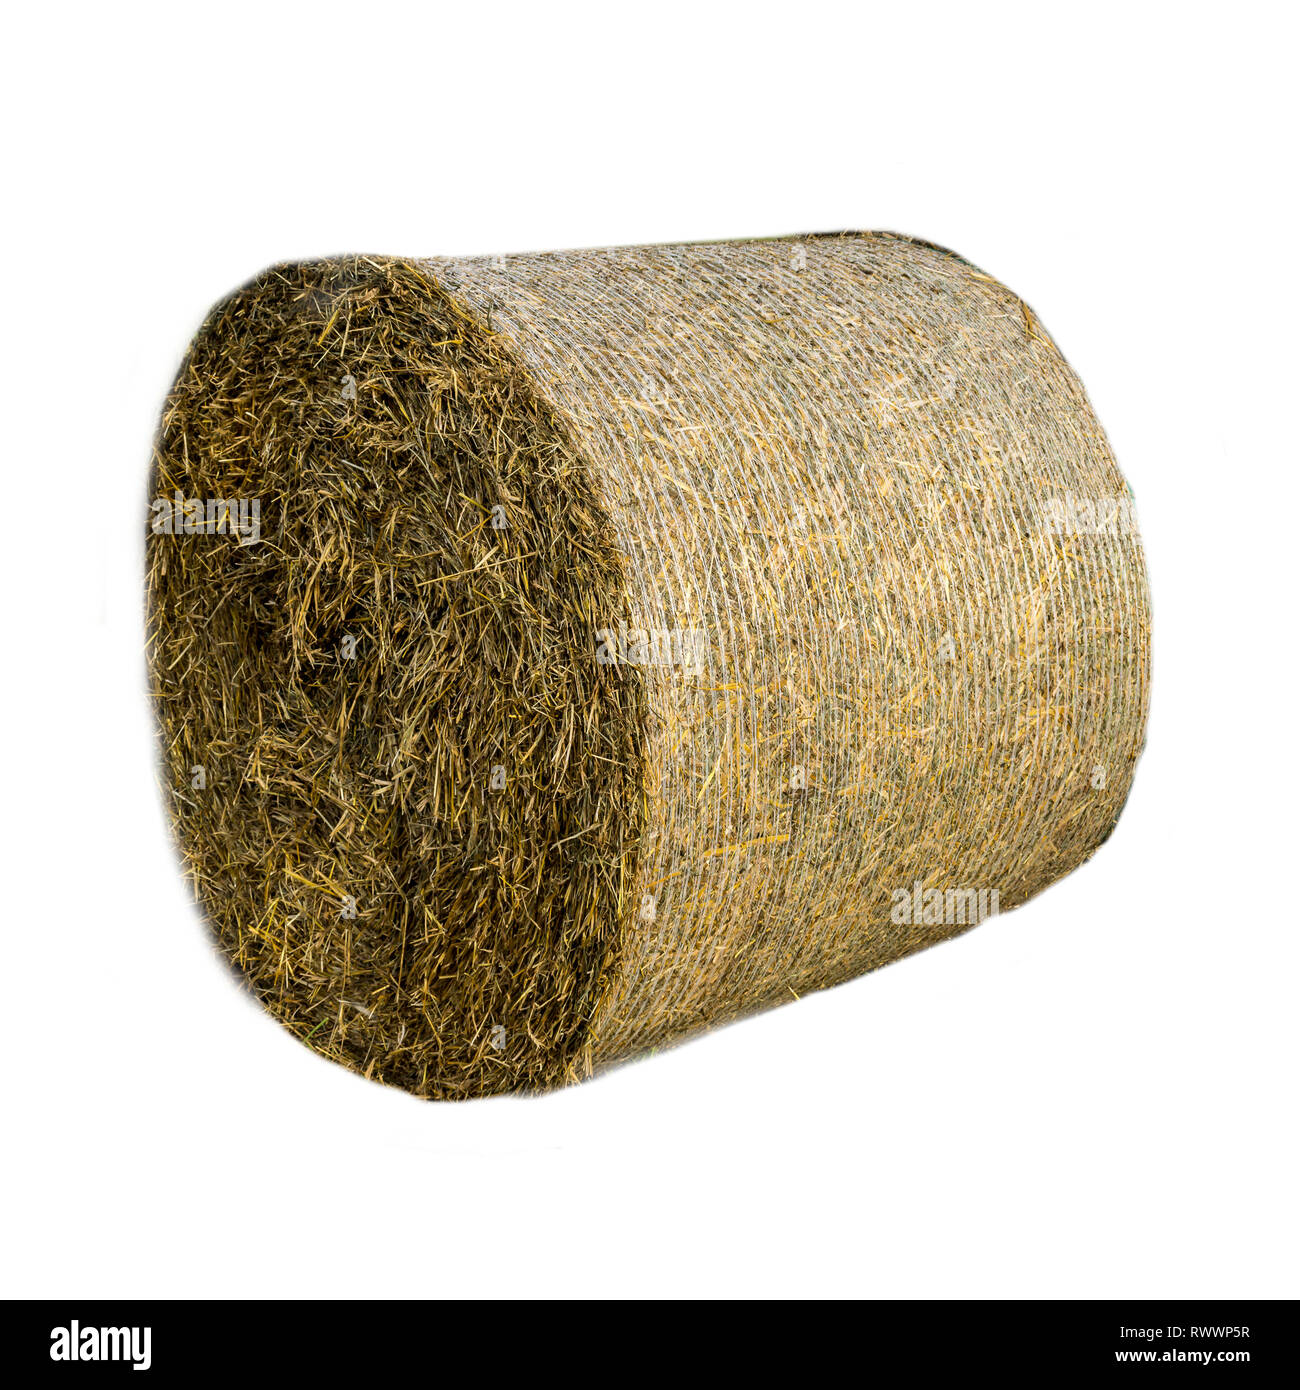 Rundballen Stroh mit Gitter abgedeckt. Stroh ist ein weit verbreitetes organisches Material für Bettzeug Vieh auf einer Molkerei. Isoliert Foto. Stockfoto